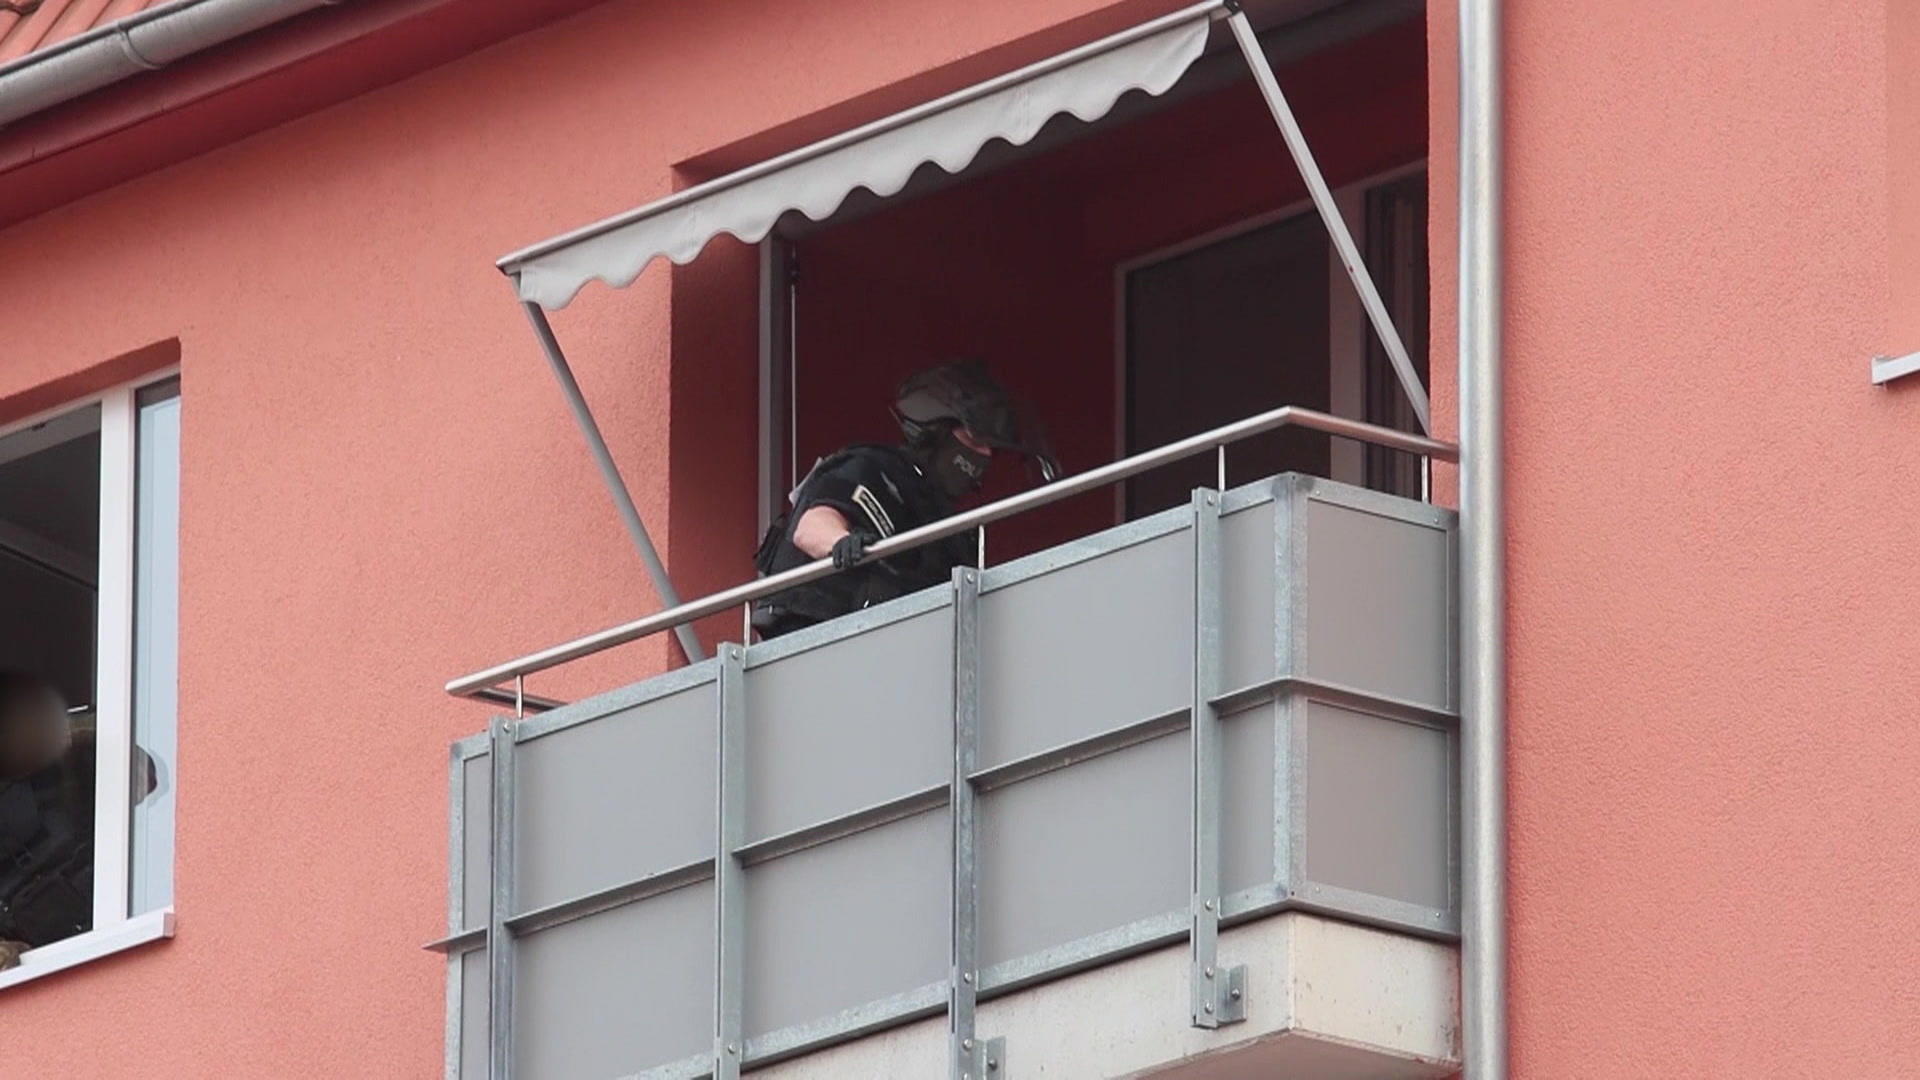 Un hombre arroja material de apartamentos a la policía - ¡Operación SEK!  Mobiliario y barra metálica.